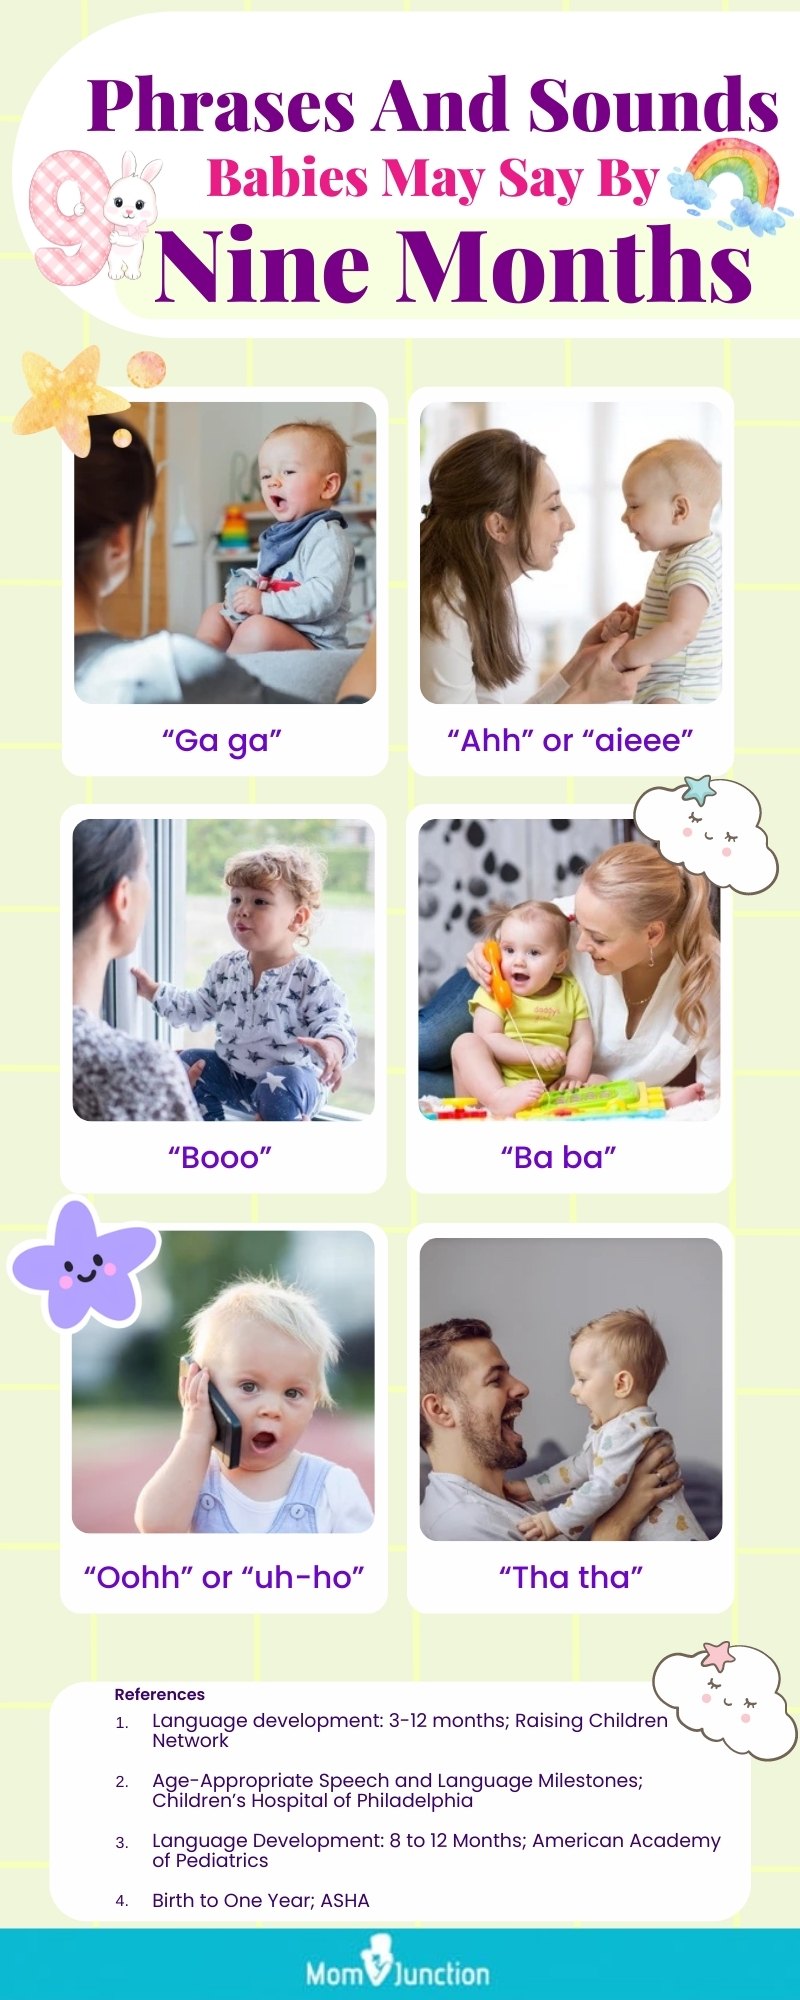 9个月大的婴儿可能会说的短语和声音(信息图)